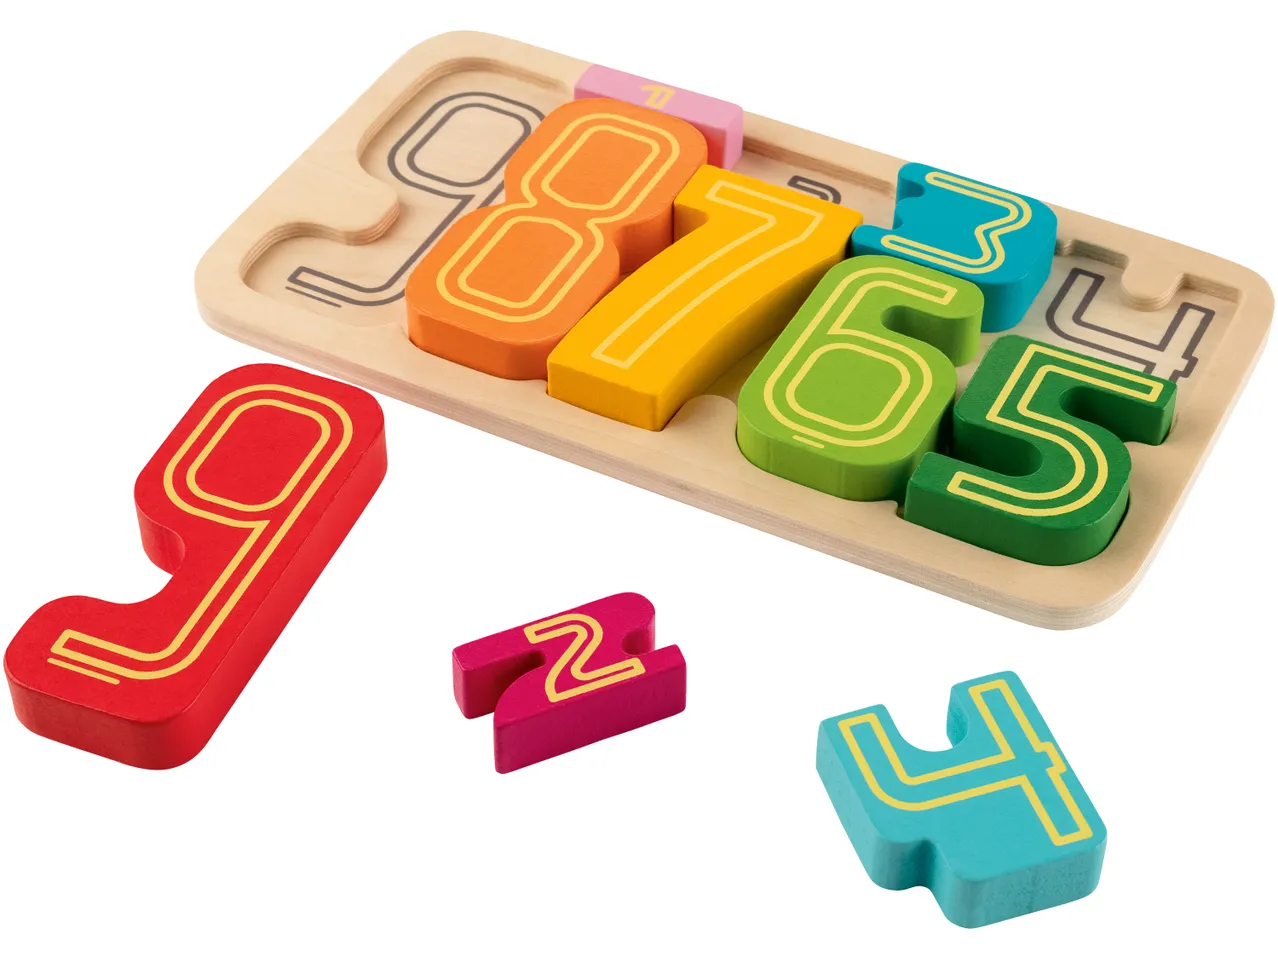 Gioco Montessori Puzzle o costruzioni , prezzo 7,99 EUR 
Gioco Montessori &quot;Puzzle ...